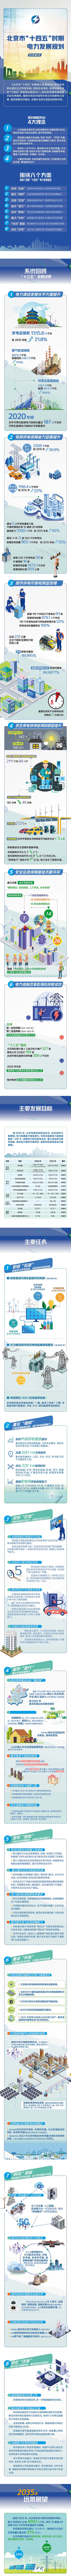 北京市电力发展规划印发 到2025年外调绿电300亿千瓦时.jpg